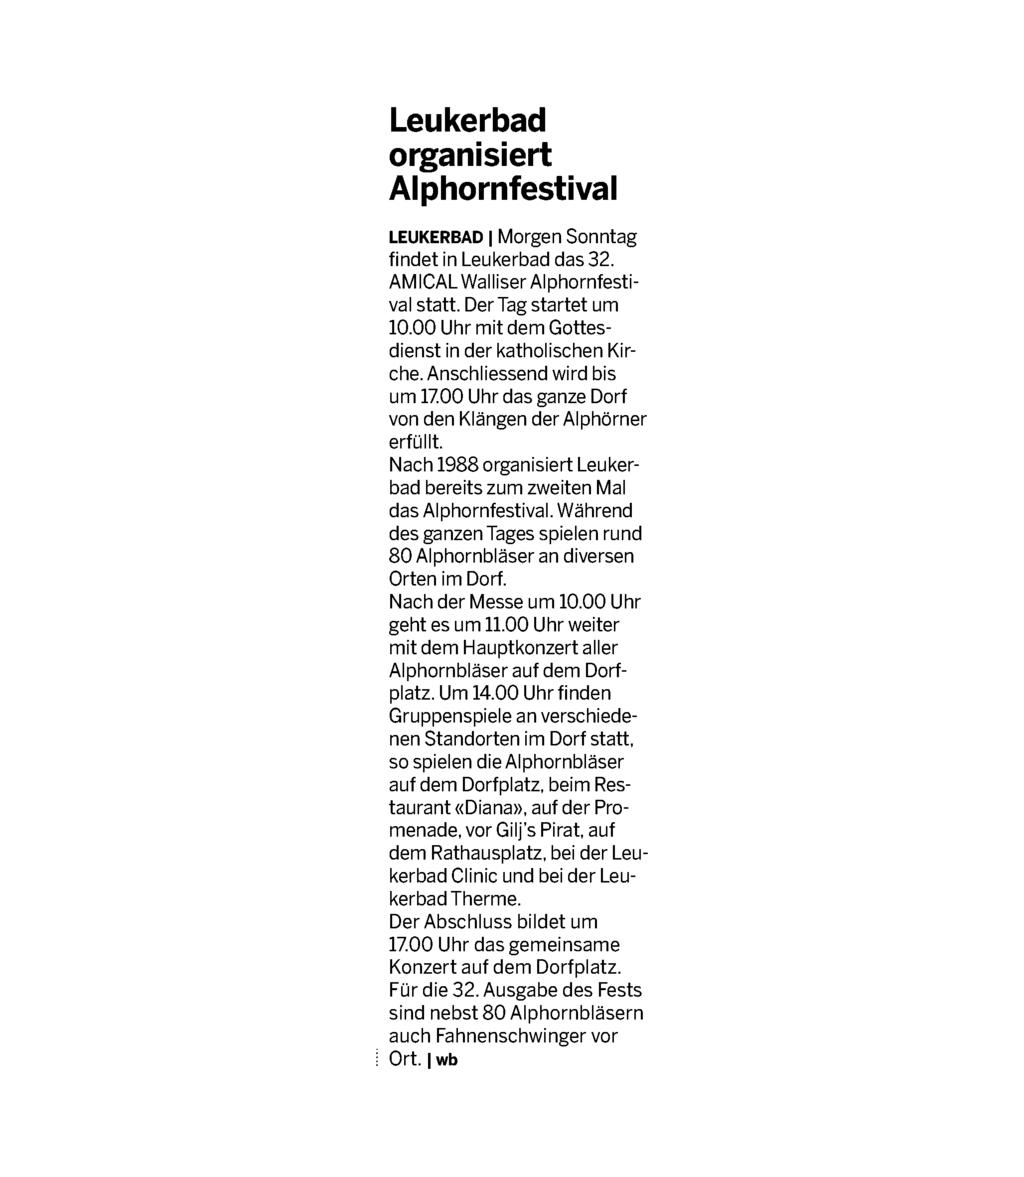 : 277009 Seite: 6 Fläche: 8'430 mm² Leukerbad organisiert Alphornfestival LEUKERBAD 1 Morgen Sonntag findet in Leukerbad das 32. AM ICAL Walliser Alphornfestival statt. Der Tag startet um 10.